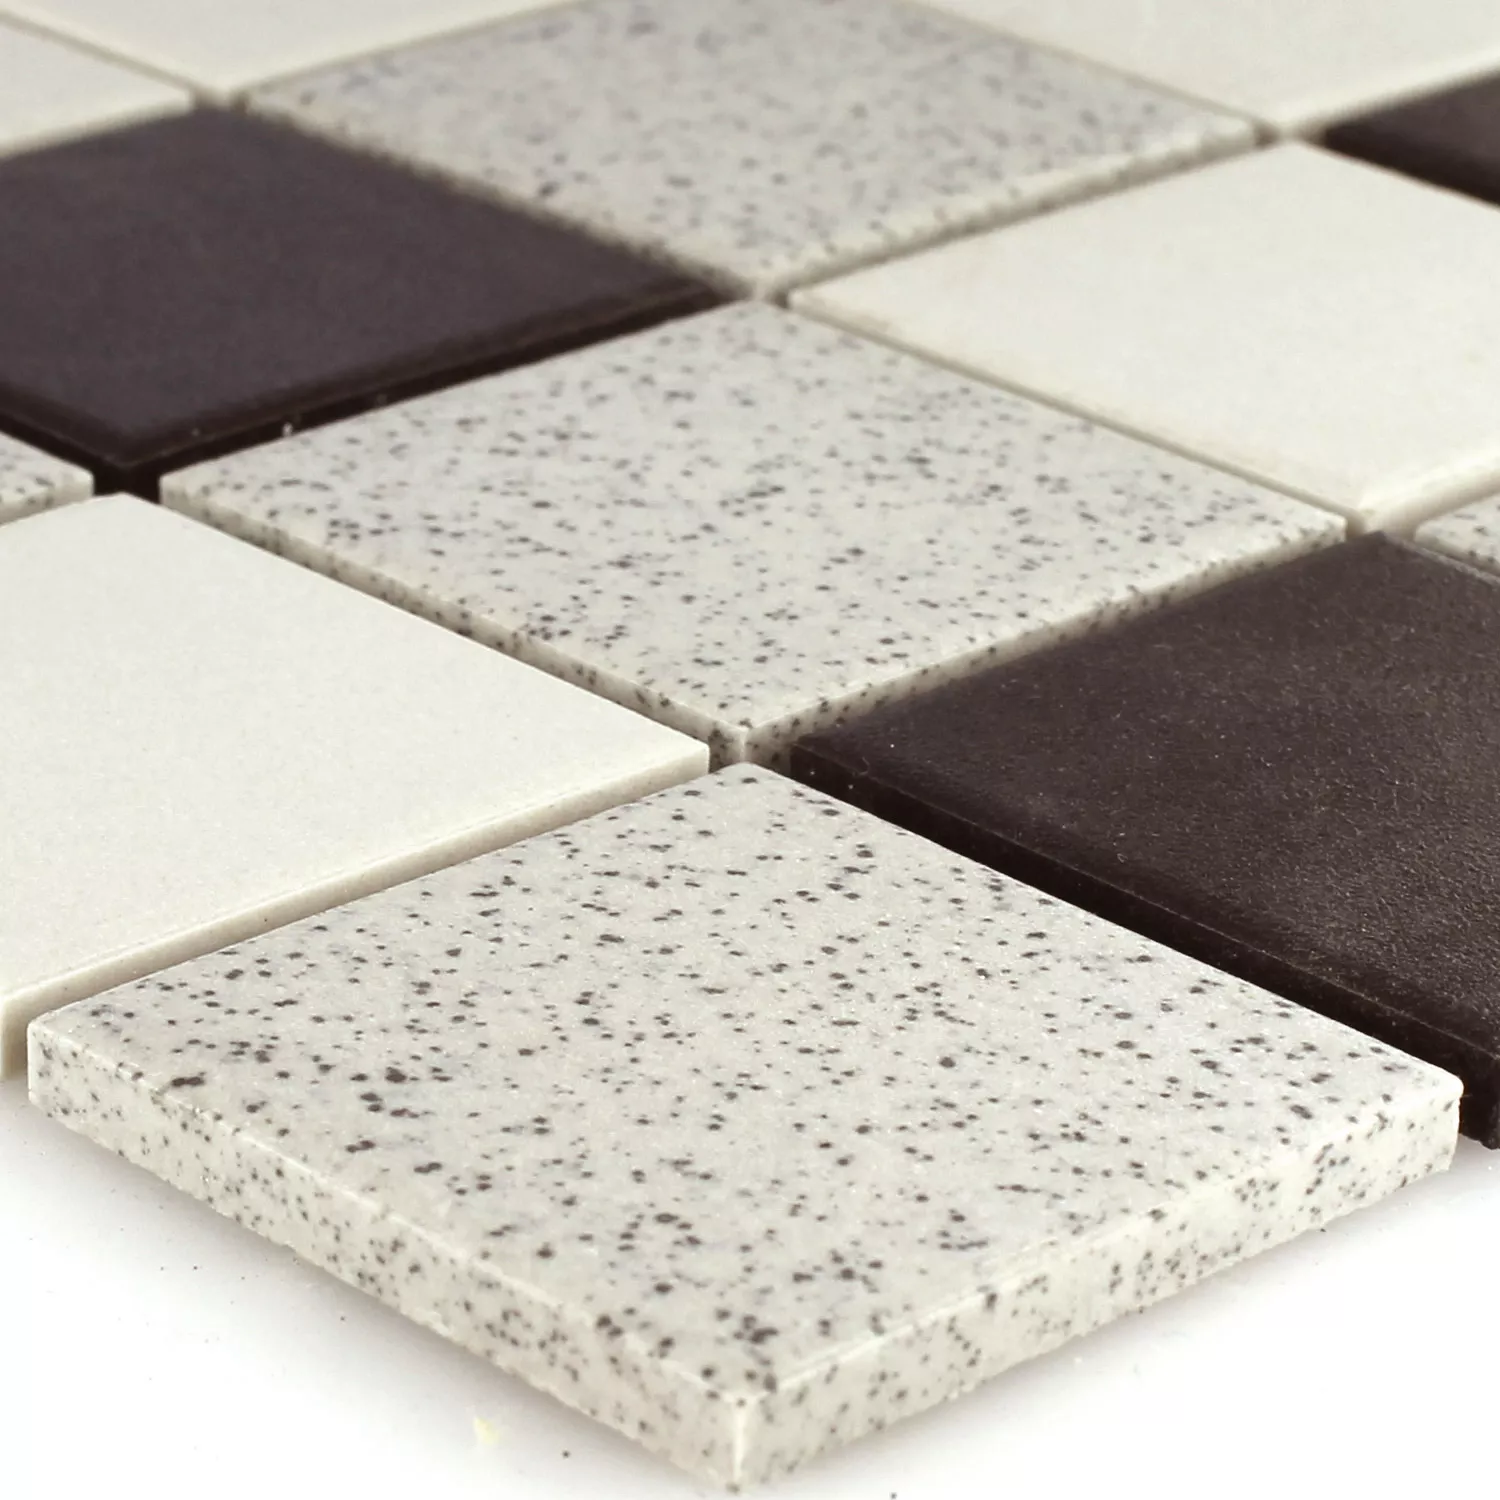 Sample Mosaic Tiles Ceramic Black Grey Mix Mat